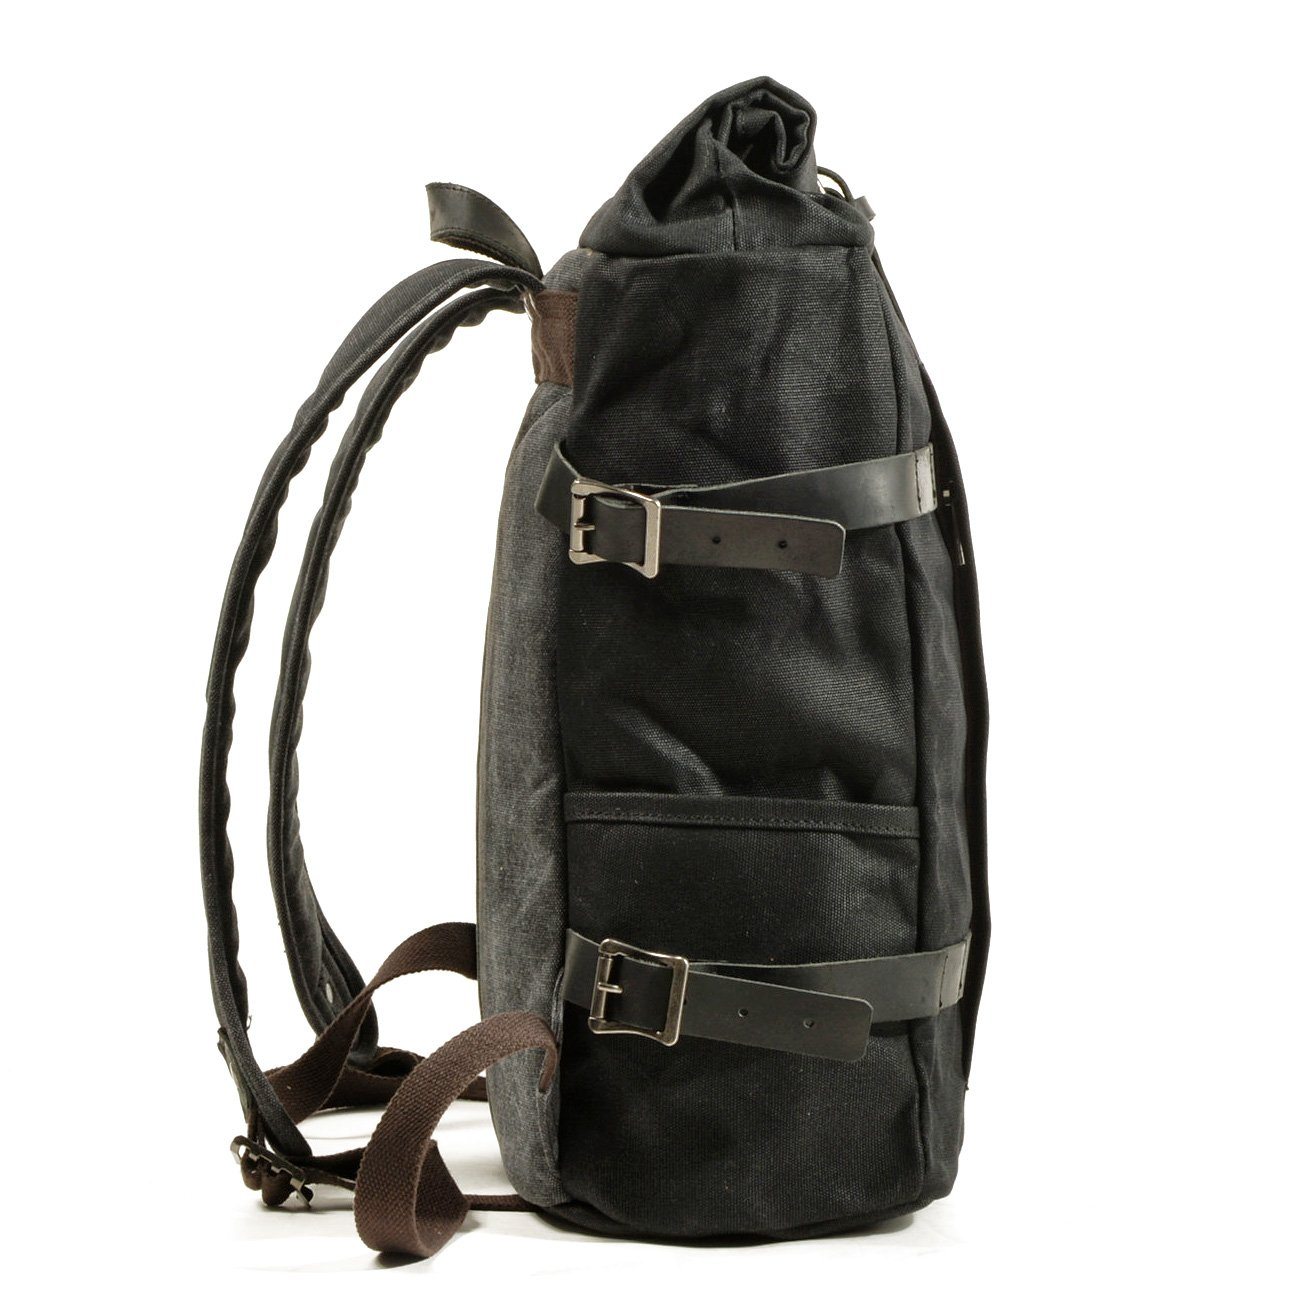 Biker Canvas Backpack - Vintage Rucksack